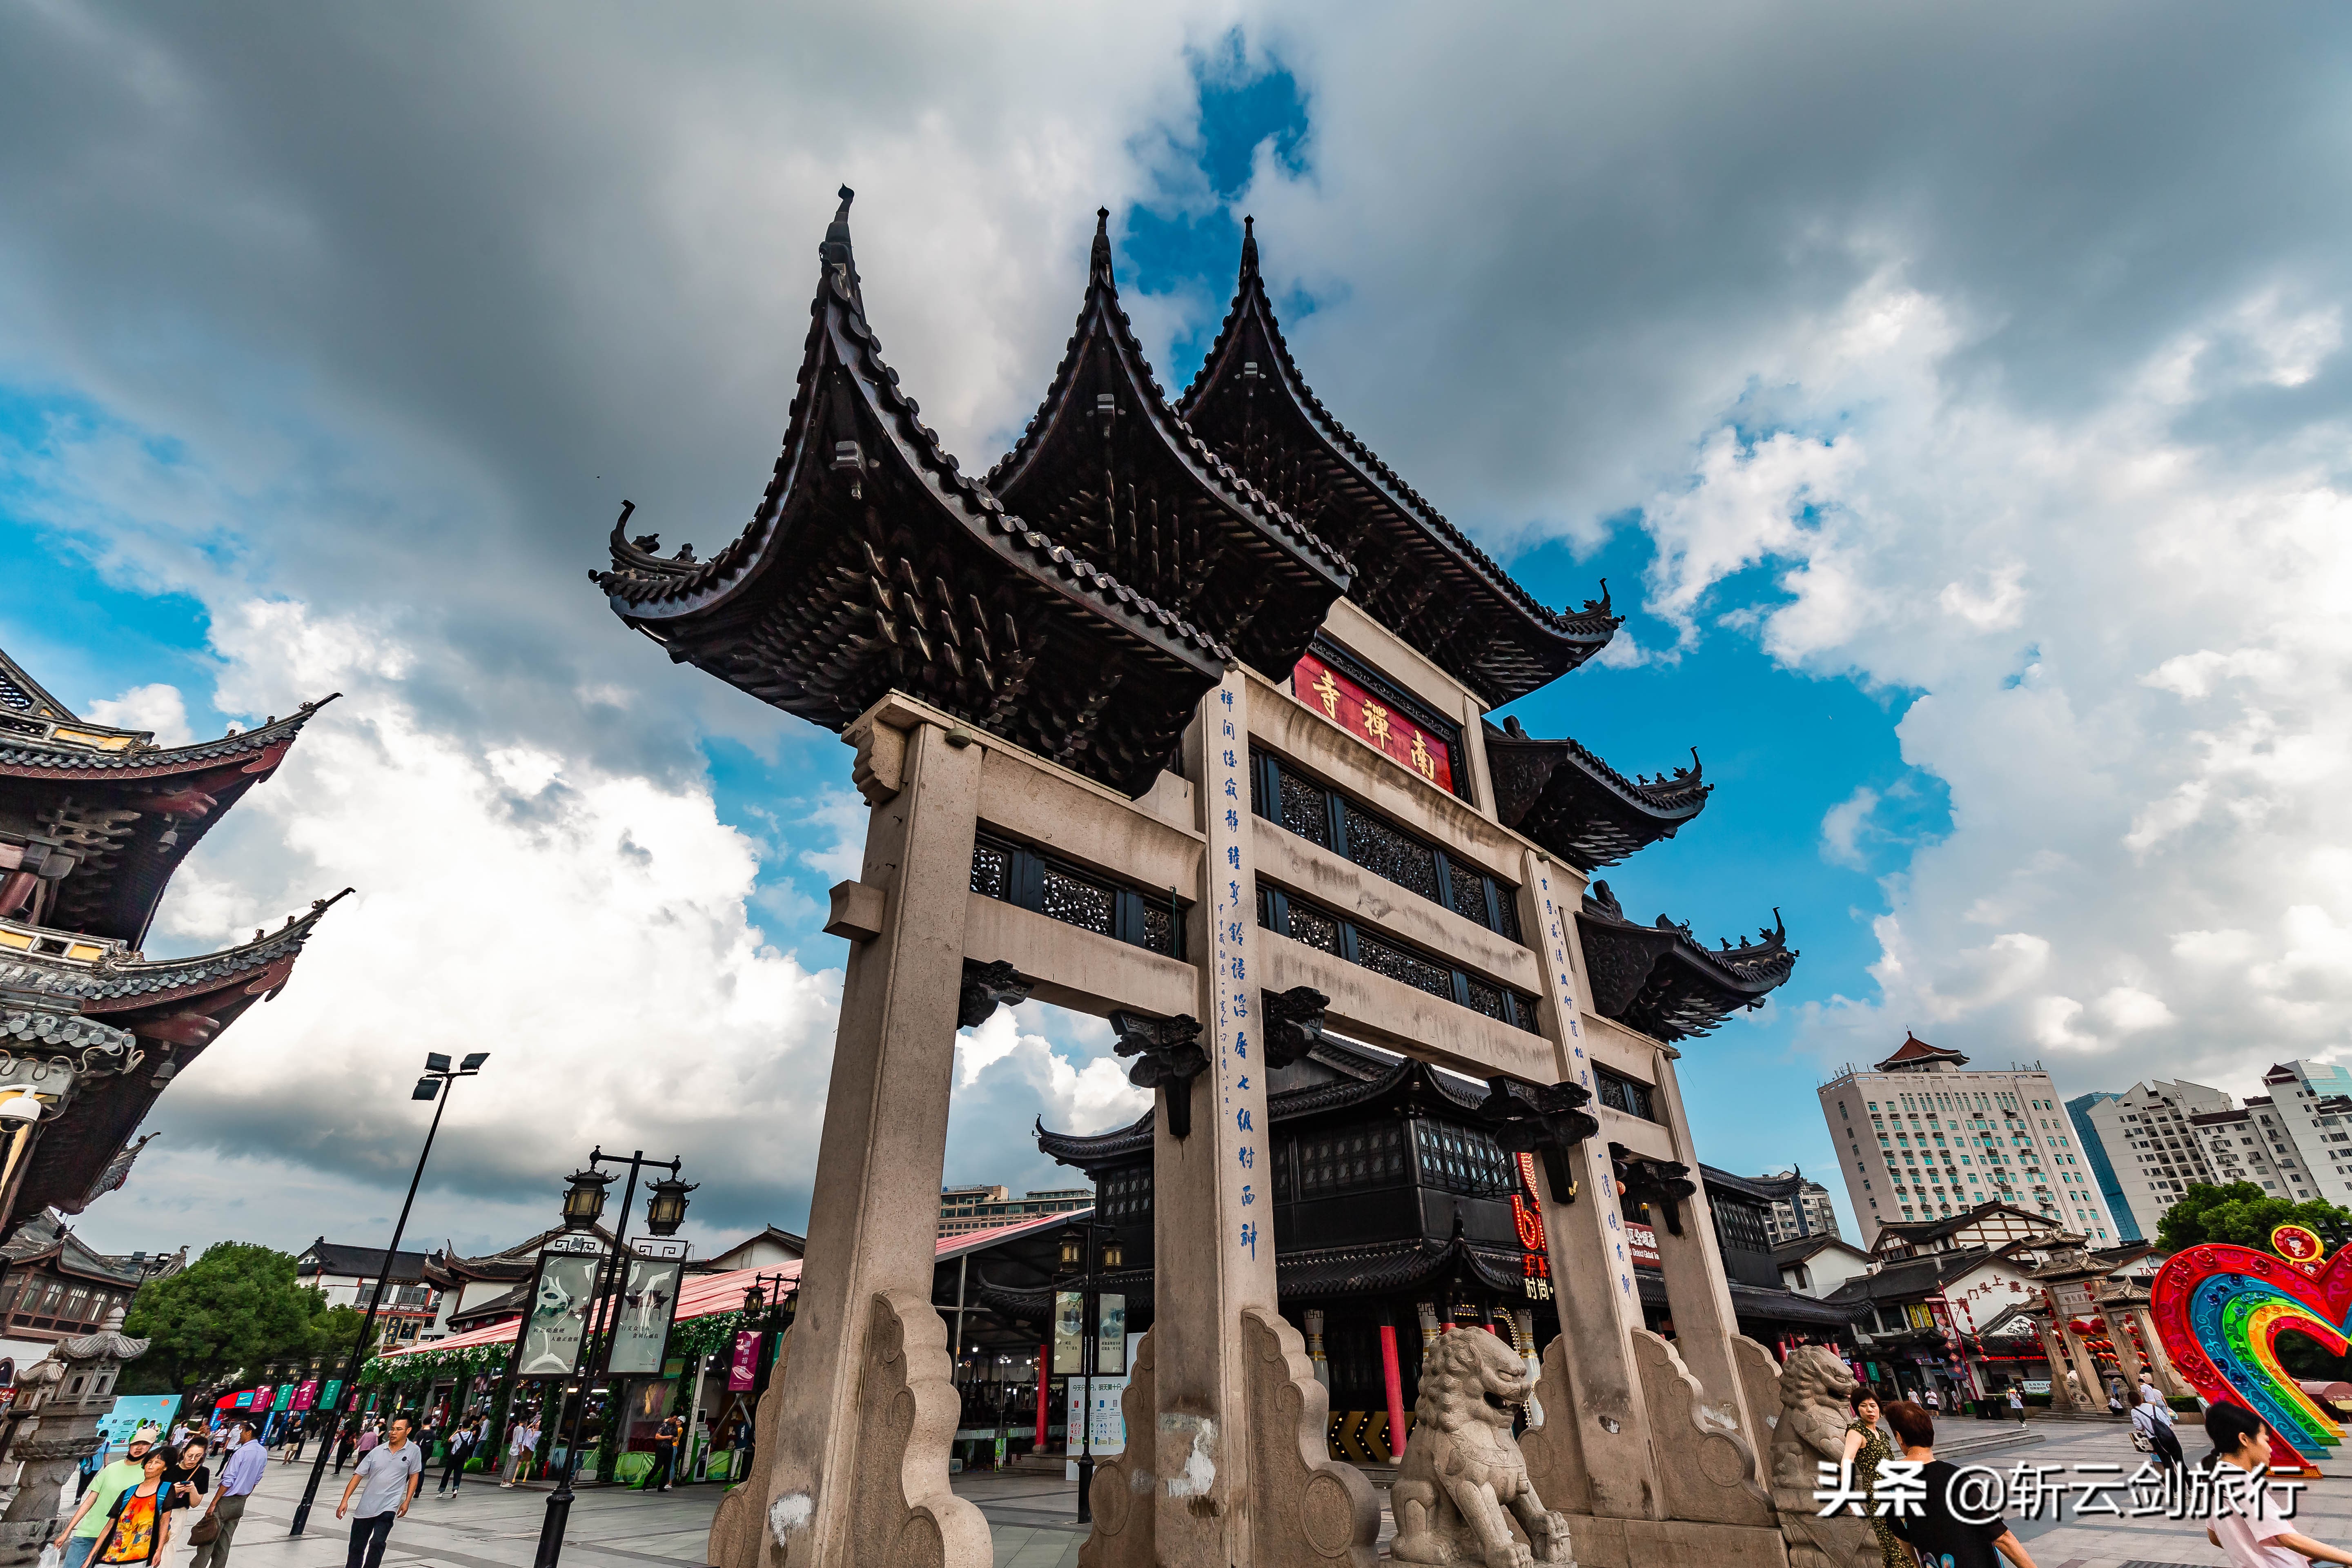 号称“江南最胜丛林”的无锡南禅寺，其妙光塔始建于北宋雍熙年间